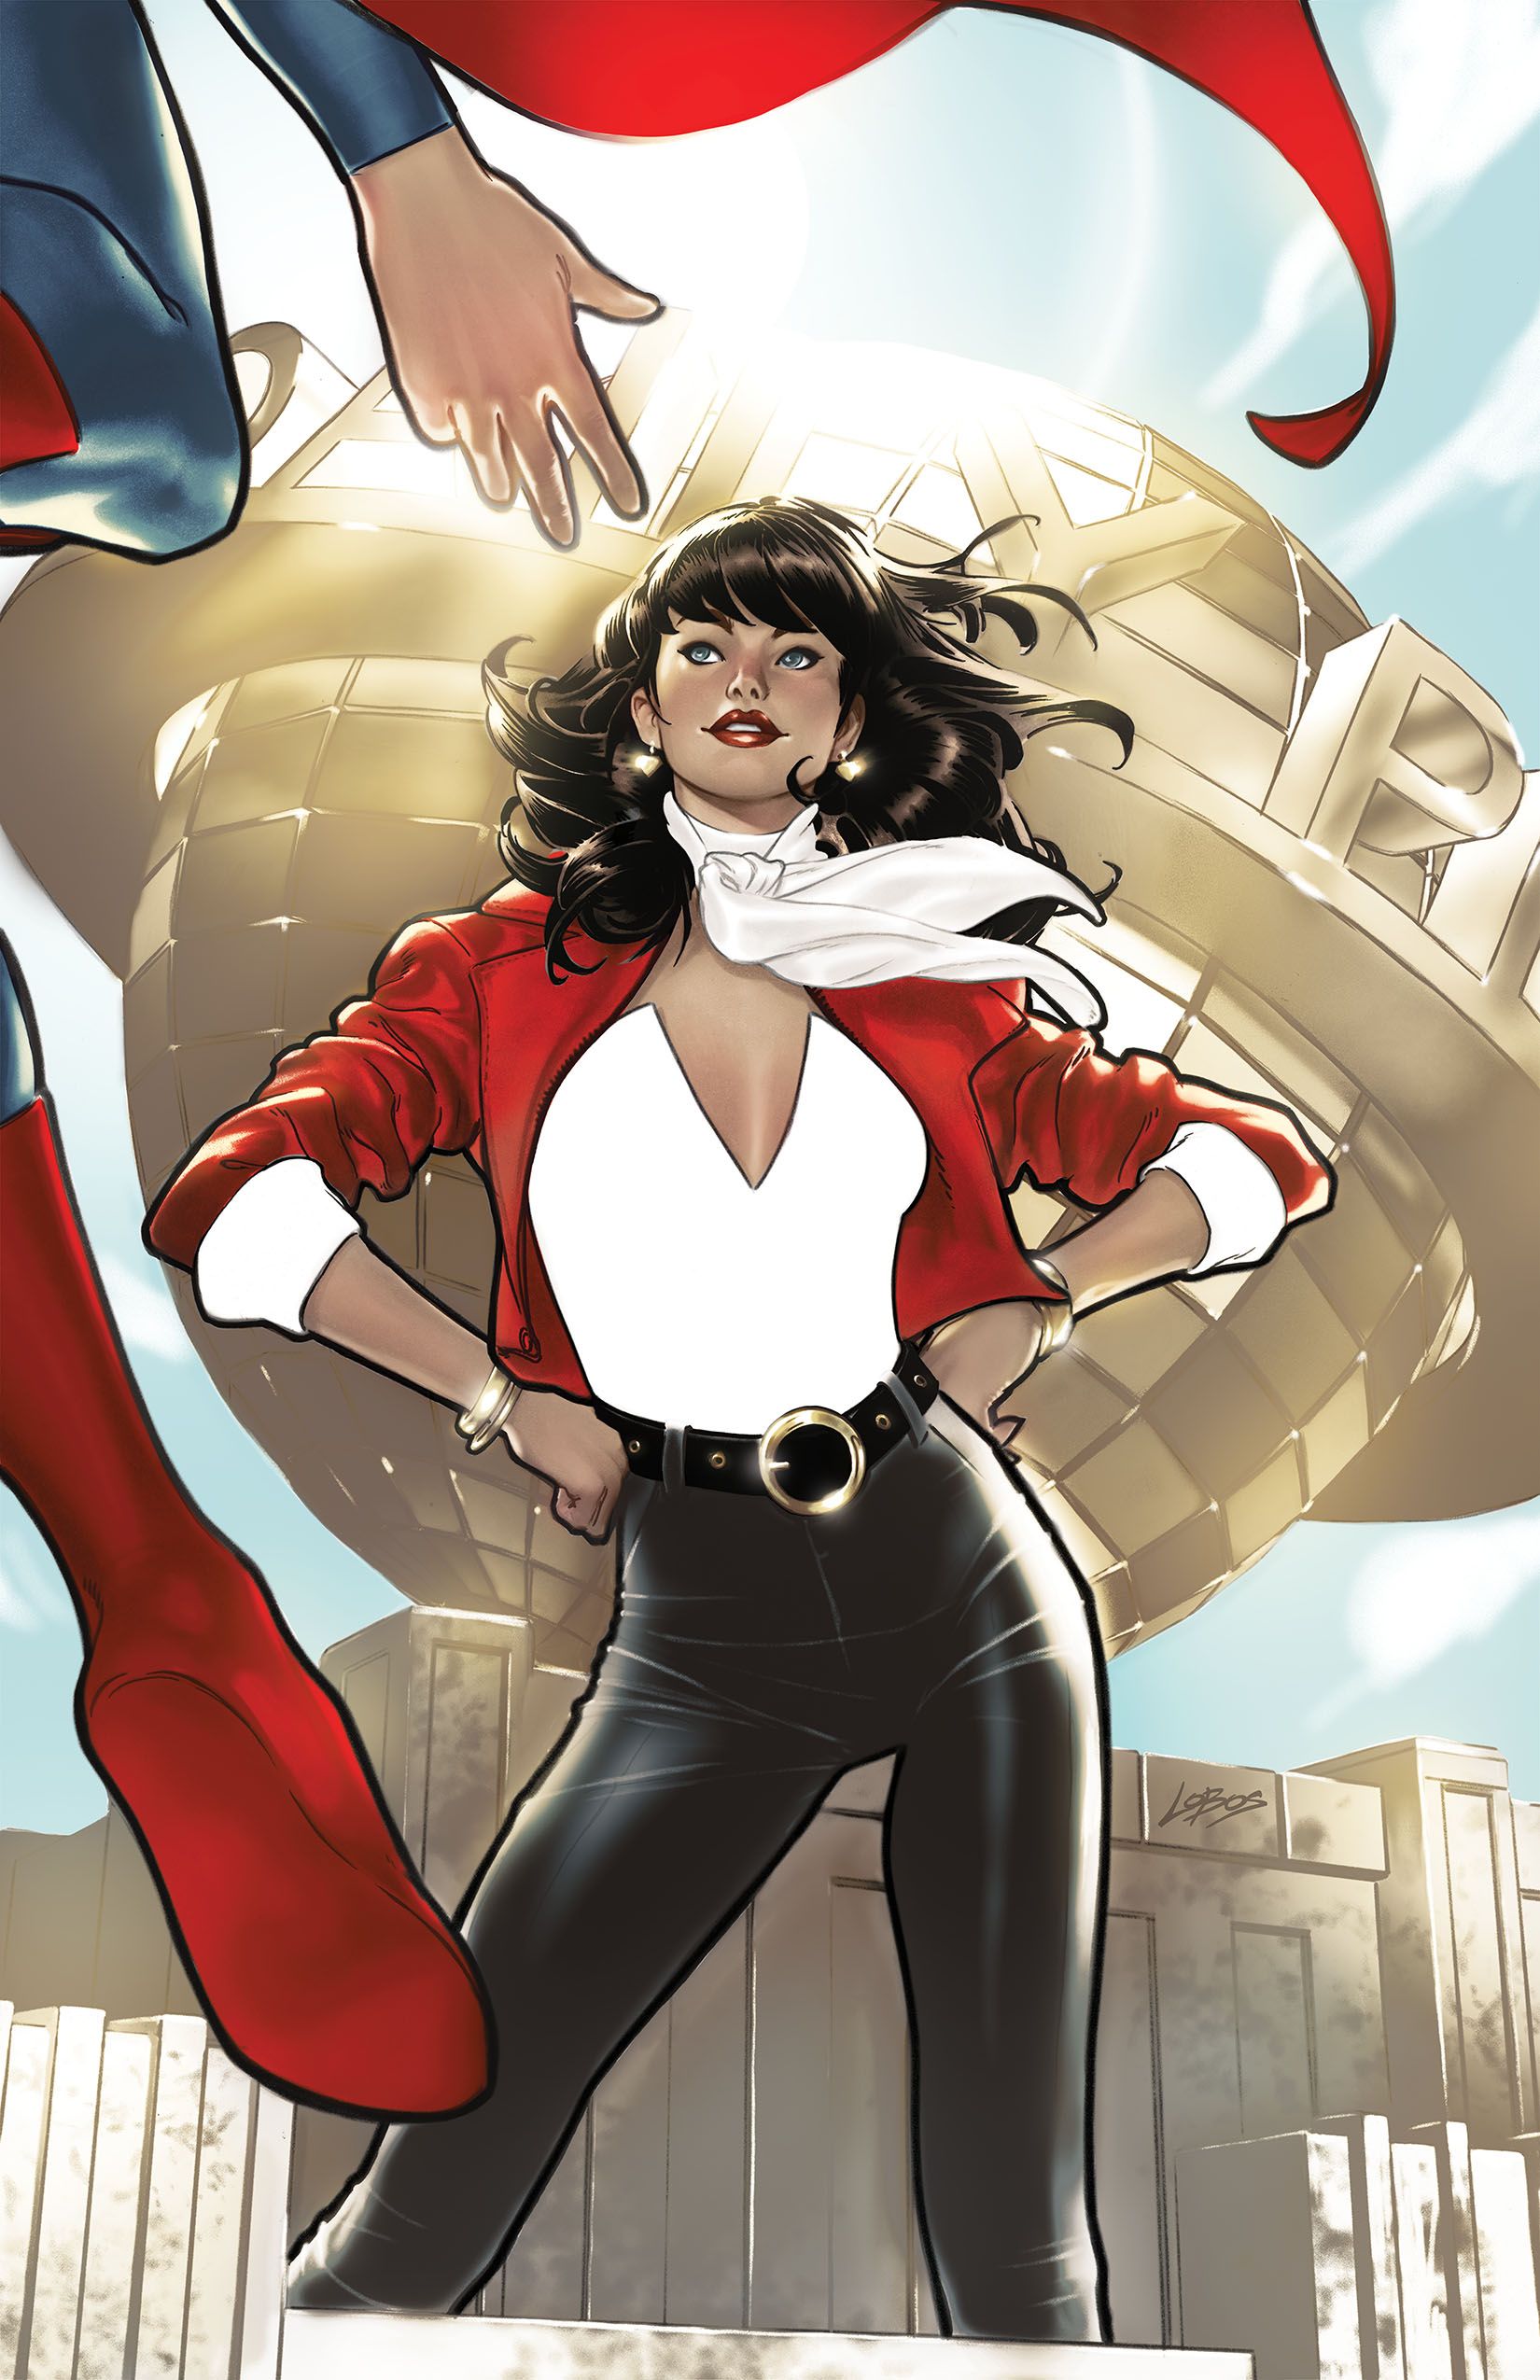 Capa variante da Action Comics 1067 Villalobos: Lois Lane posando com um casaco vermelho.